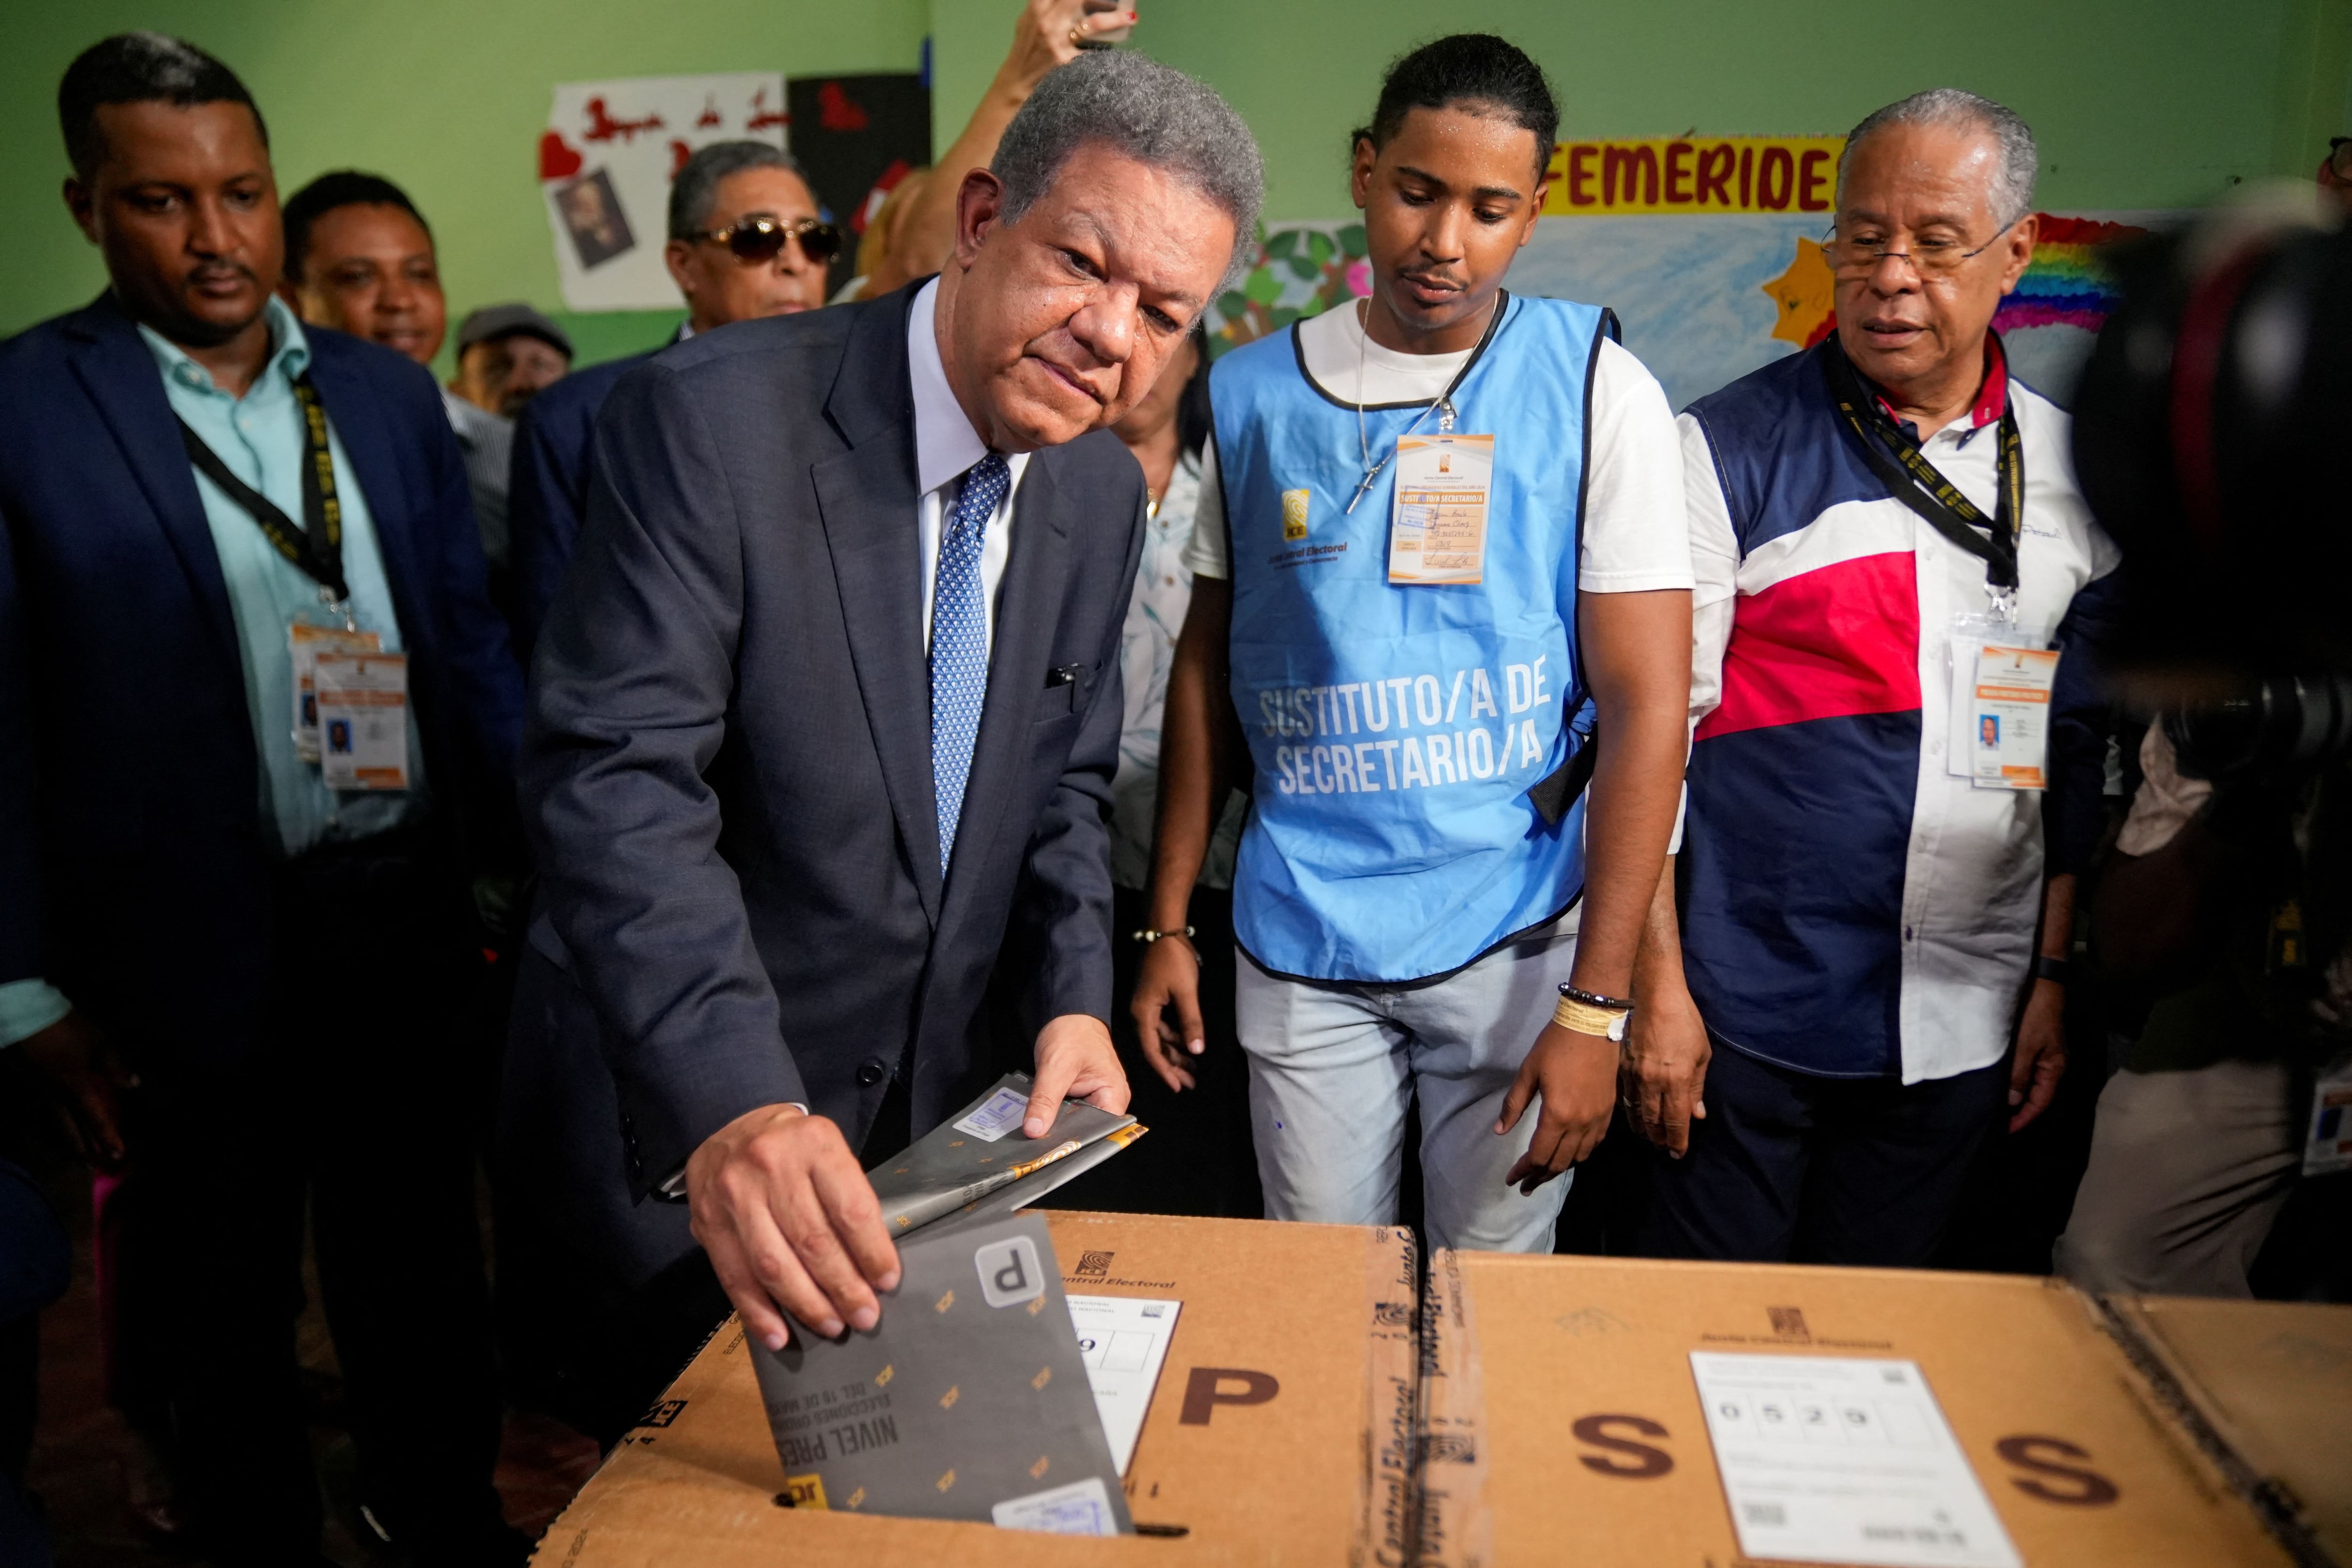 El candidato presidencial del partido Fuerza Popular Leonel Fernández vota el día de las elecciones presidenciales en Santo Domingo, República Dominicana, le 19 u mayo u 2024. REUTERS/Fran Afonso